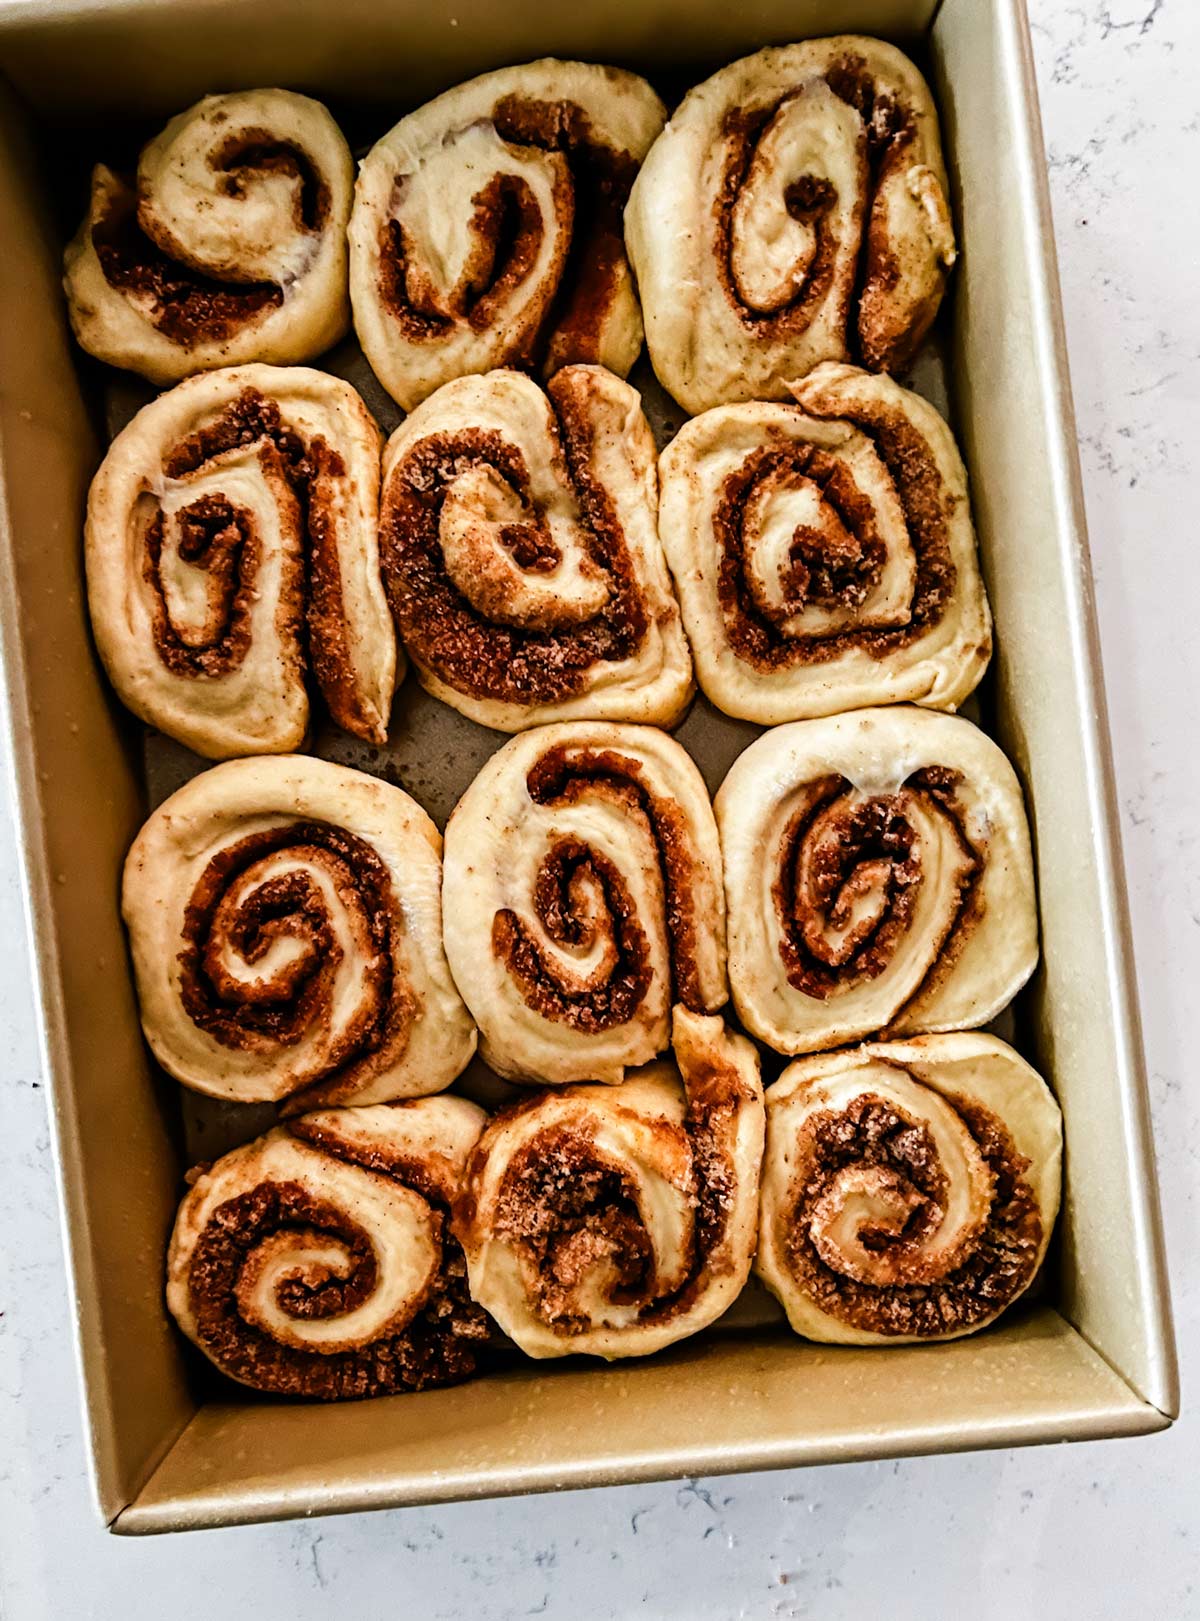 Cinnamon rolls in a baking sheet.